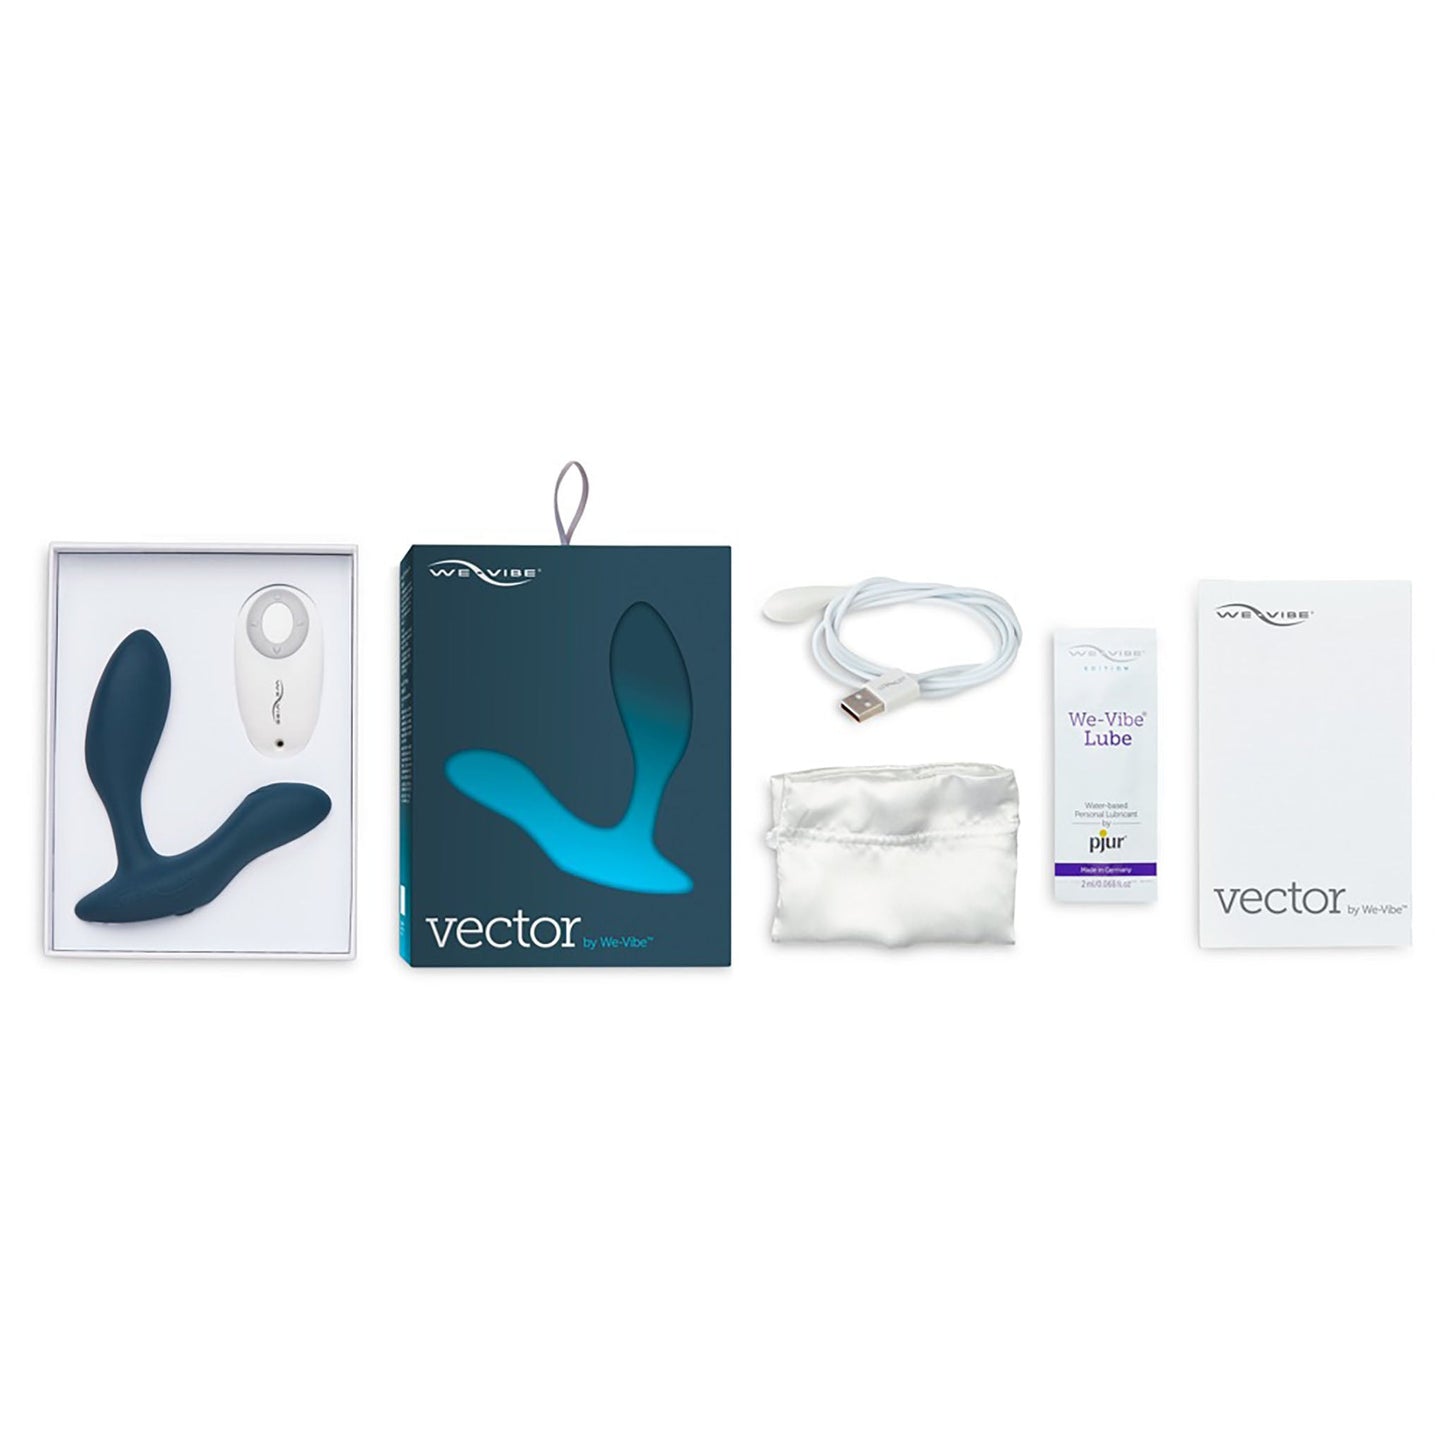 Vector, blauer, vibrierender Analplug von We-Vibe in geöffneter Verpackung